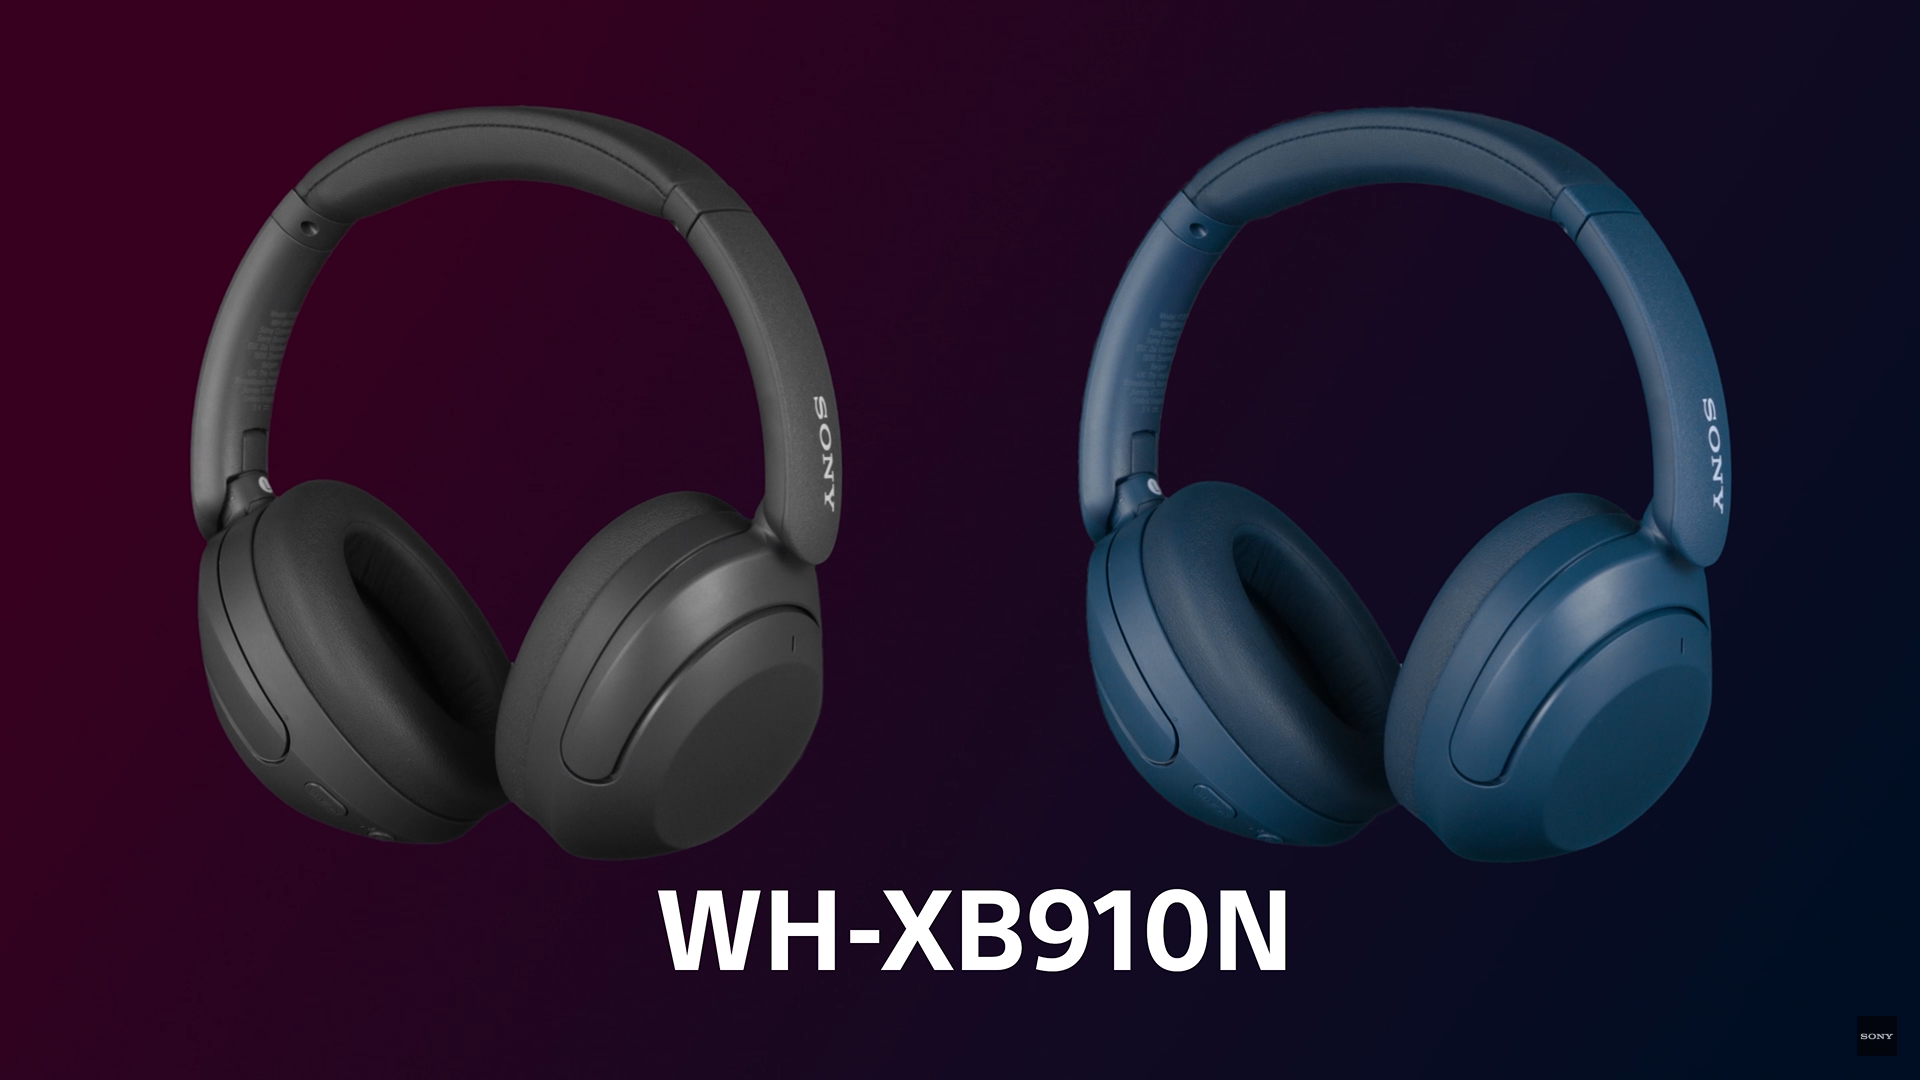 Sichern Sie sich satte 40 Prozent Rabatt auf ein neues Paar geräuschunterdrückender Kopfhörer WH-XB910N von Sony